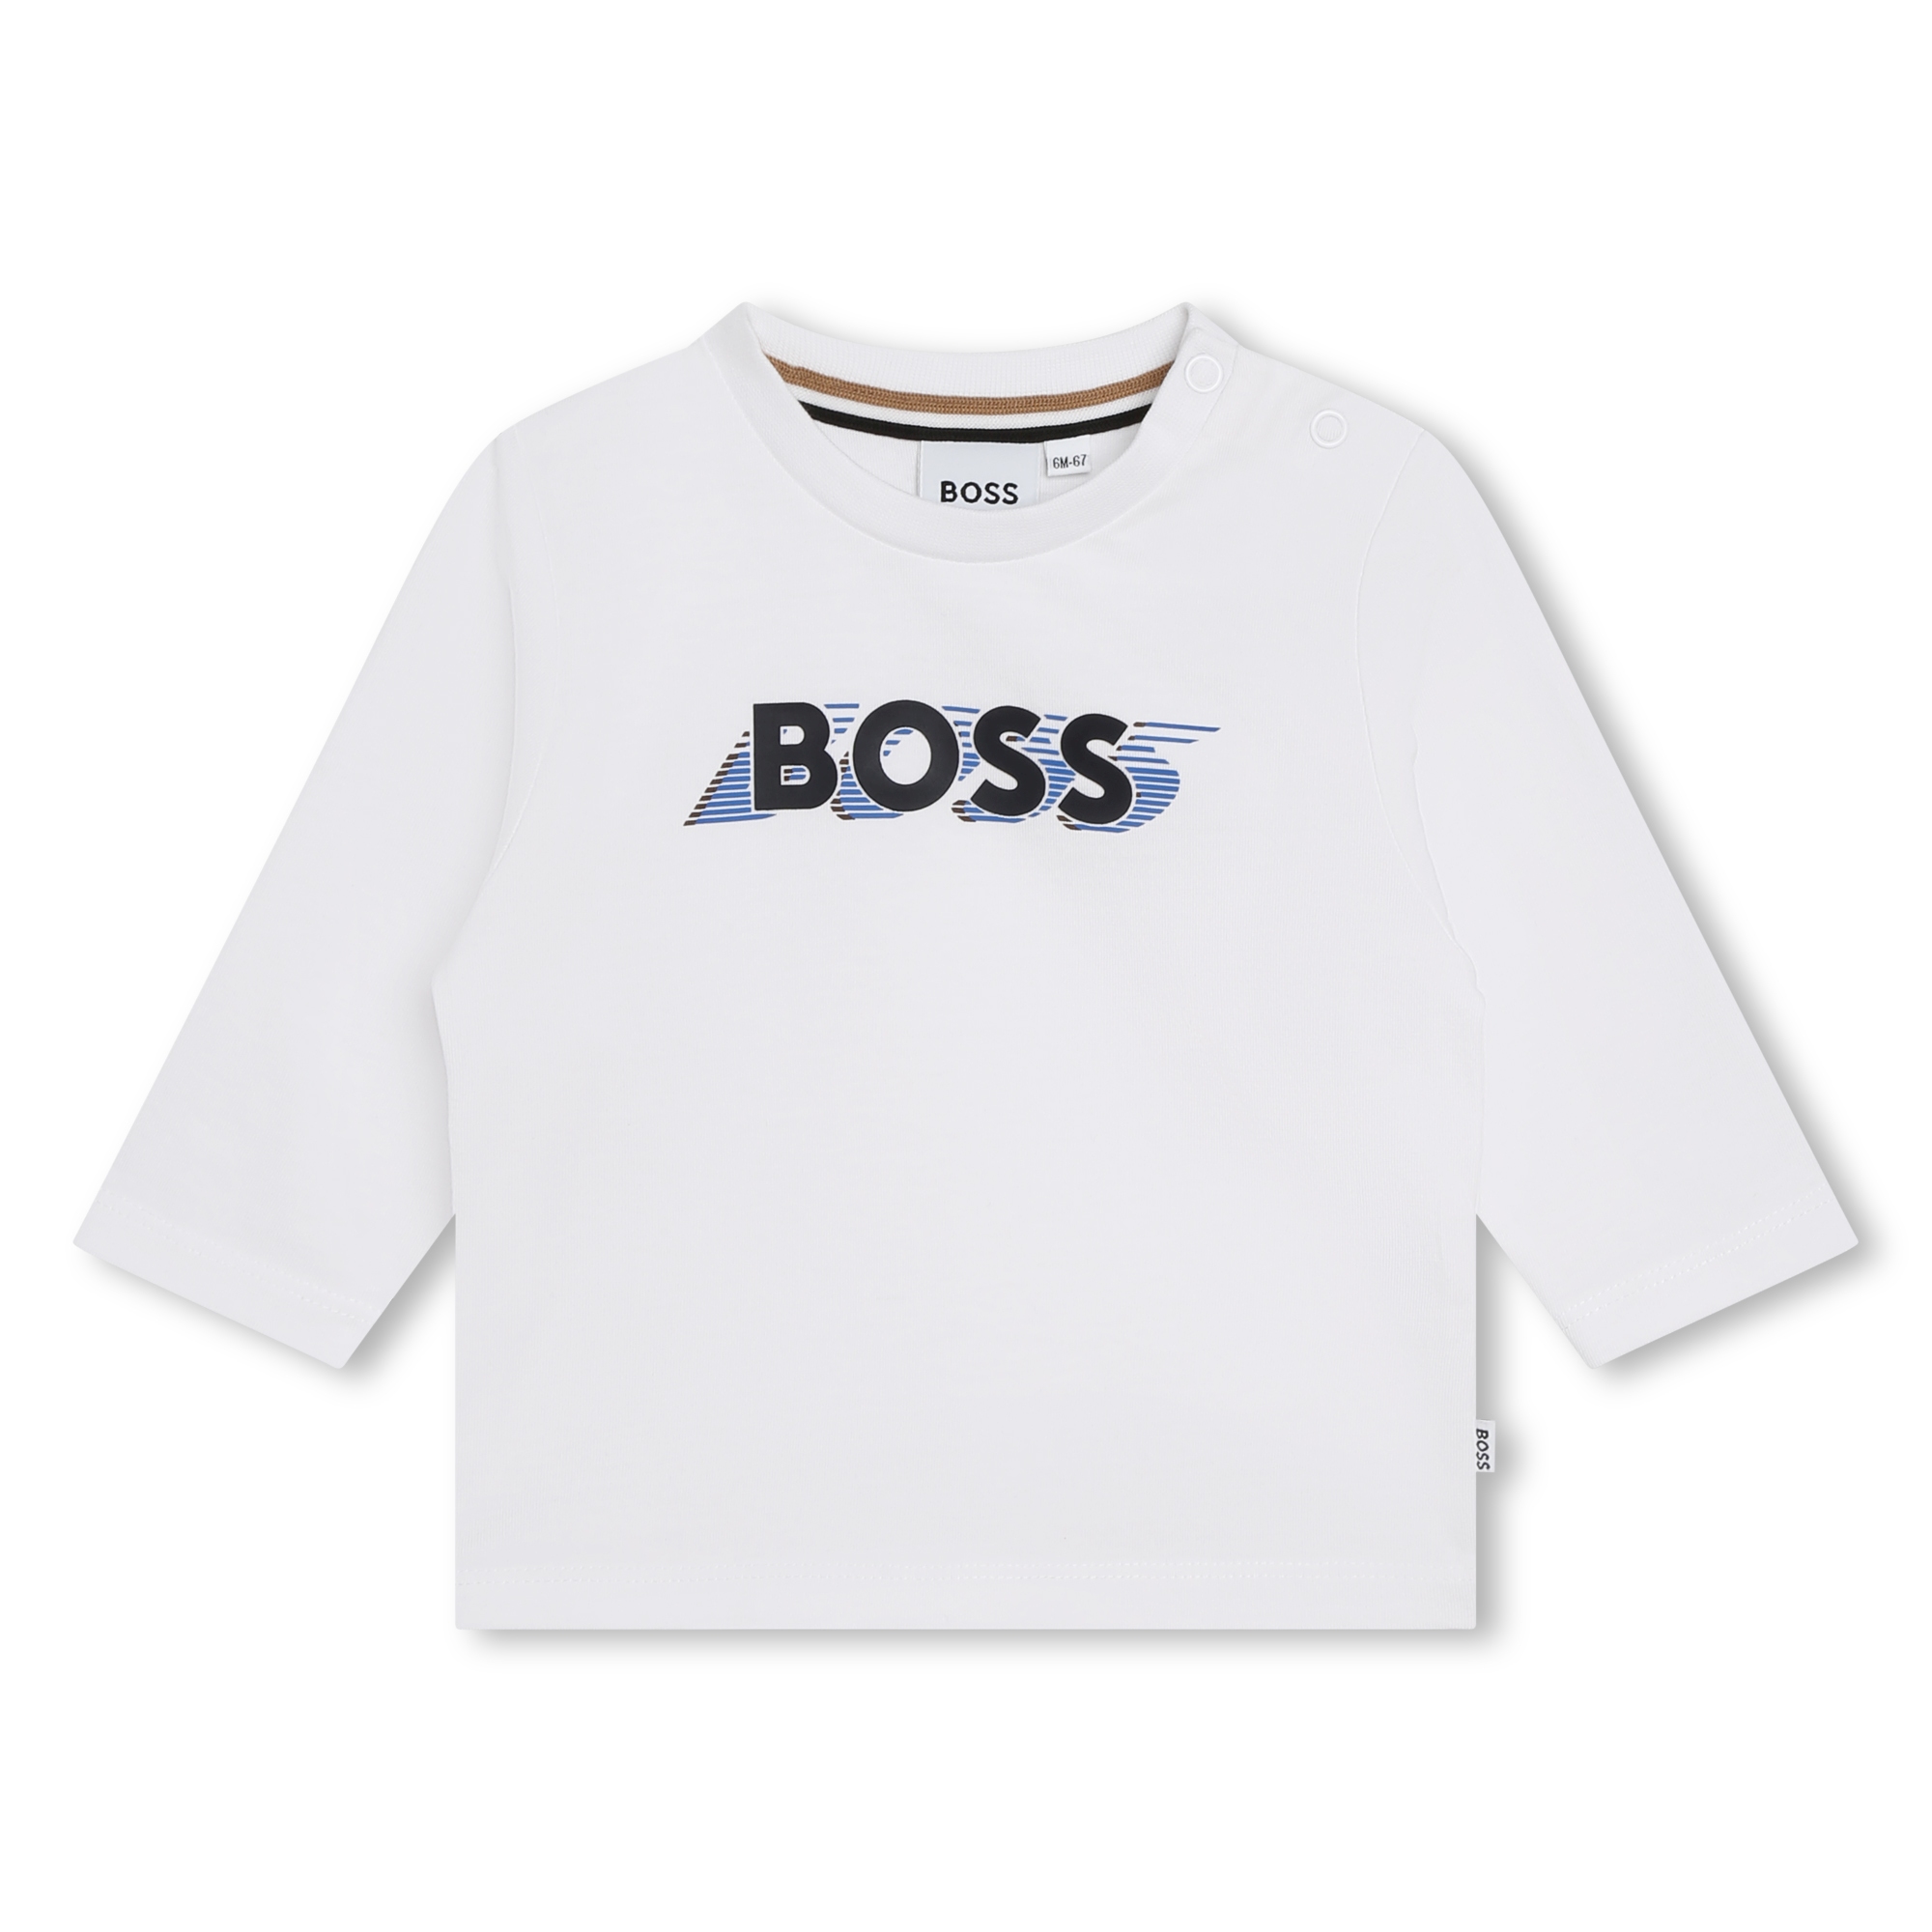 Camiseta estampada con el logo BOSS para NIÑO